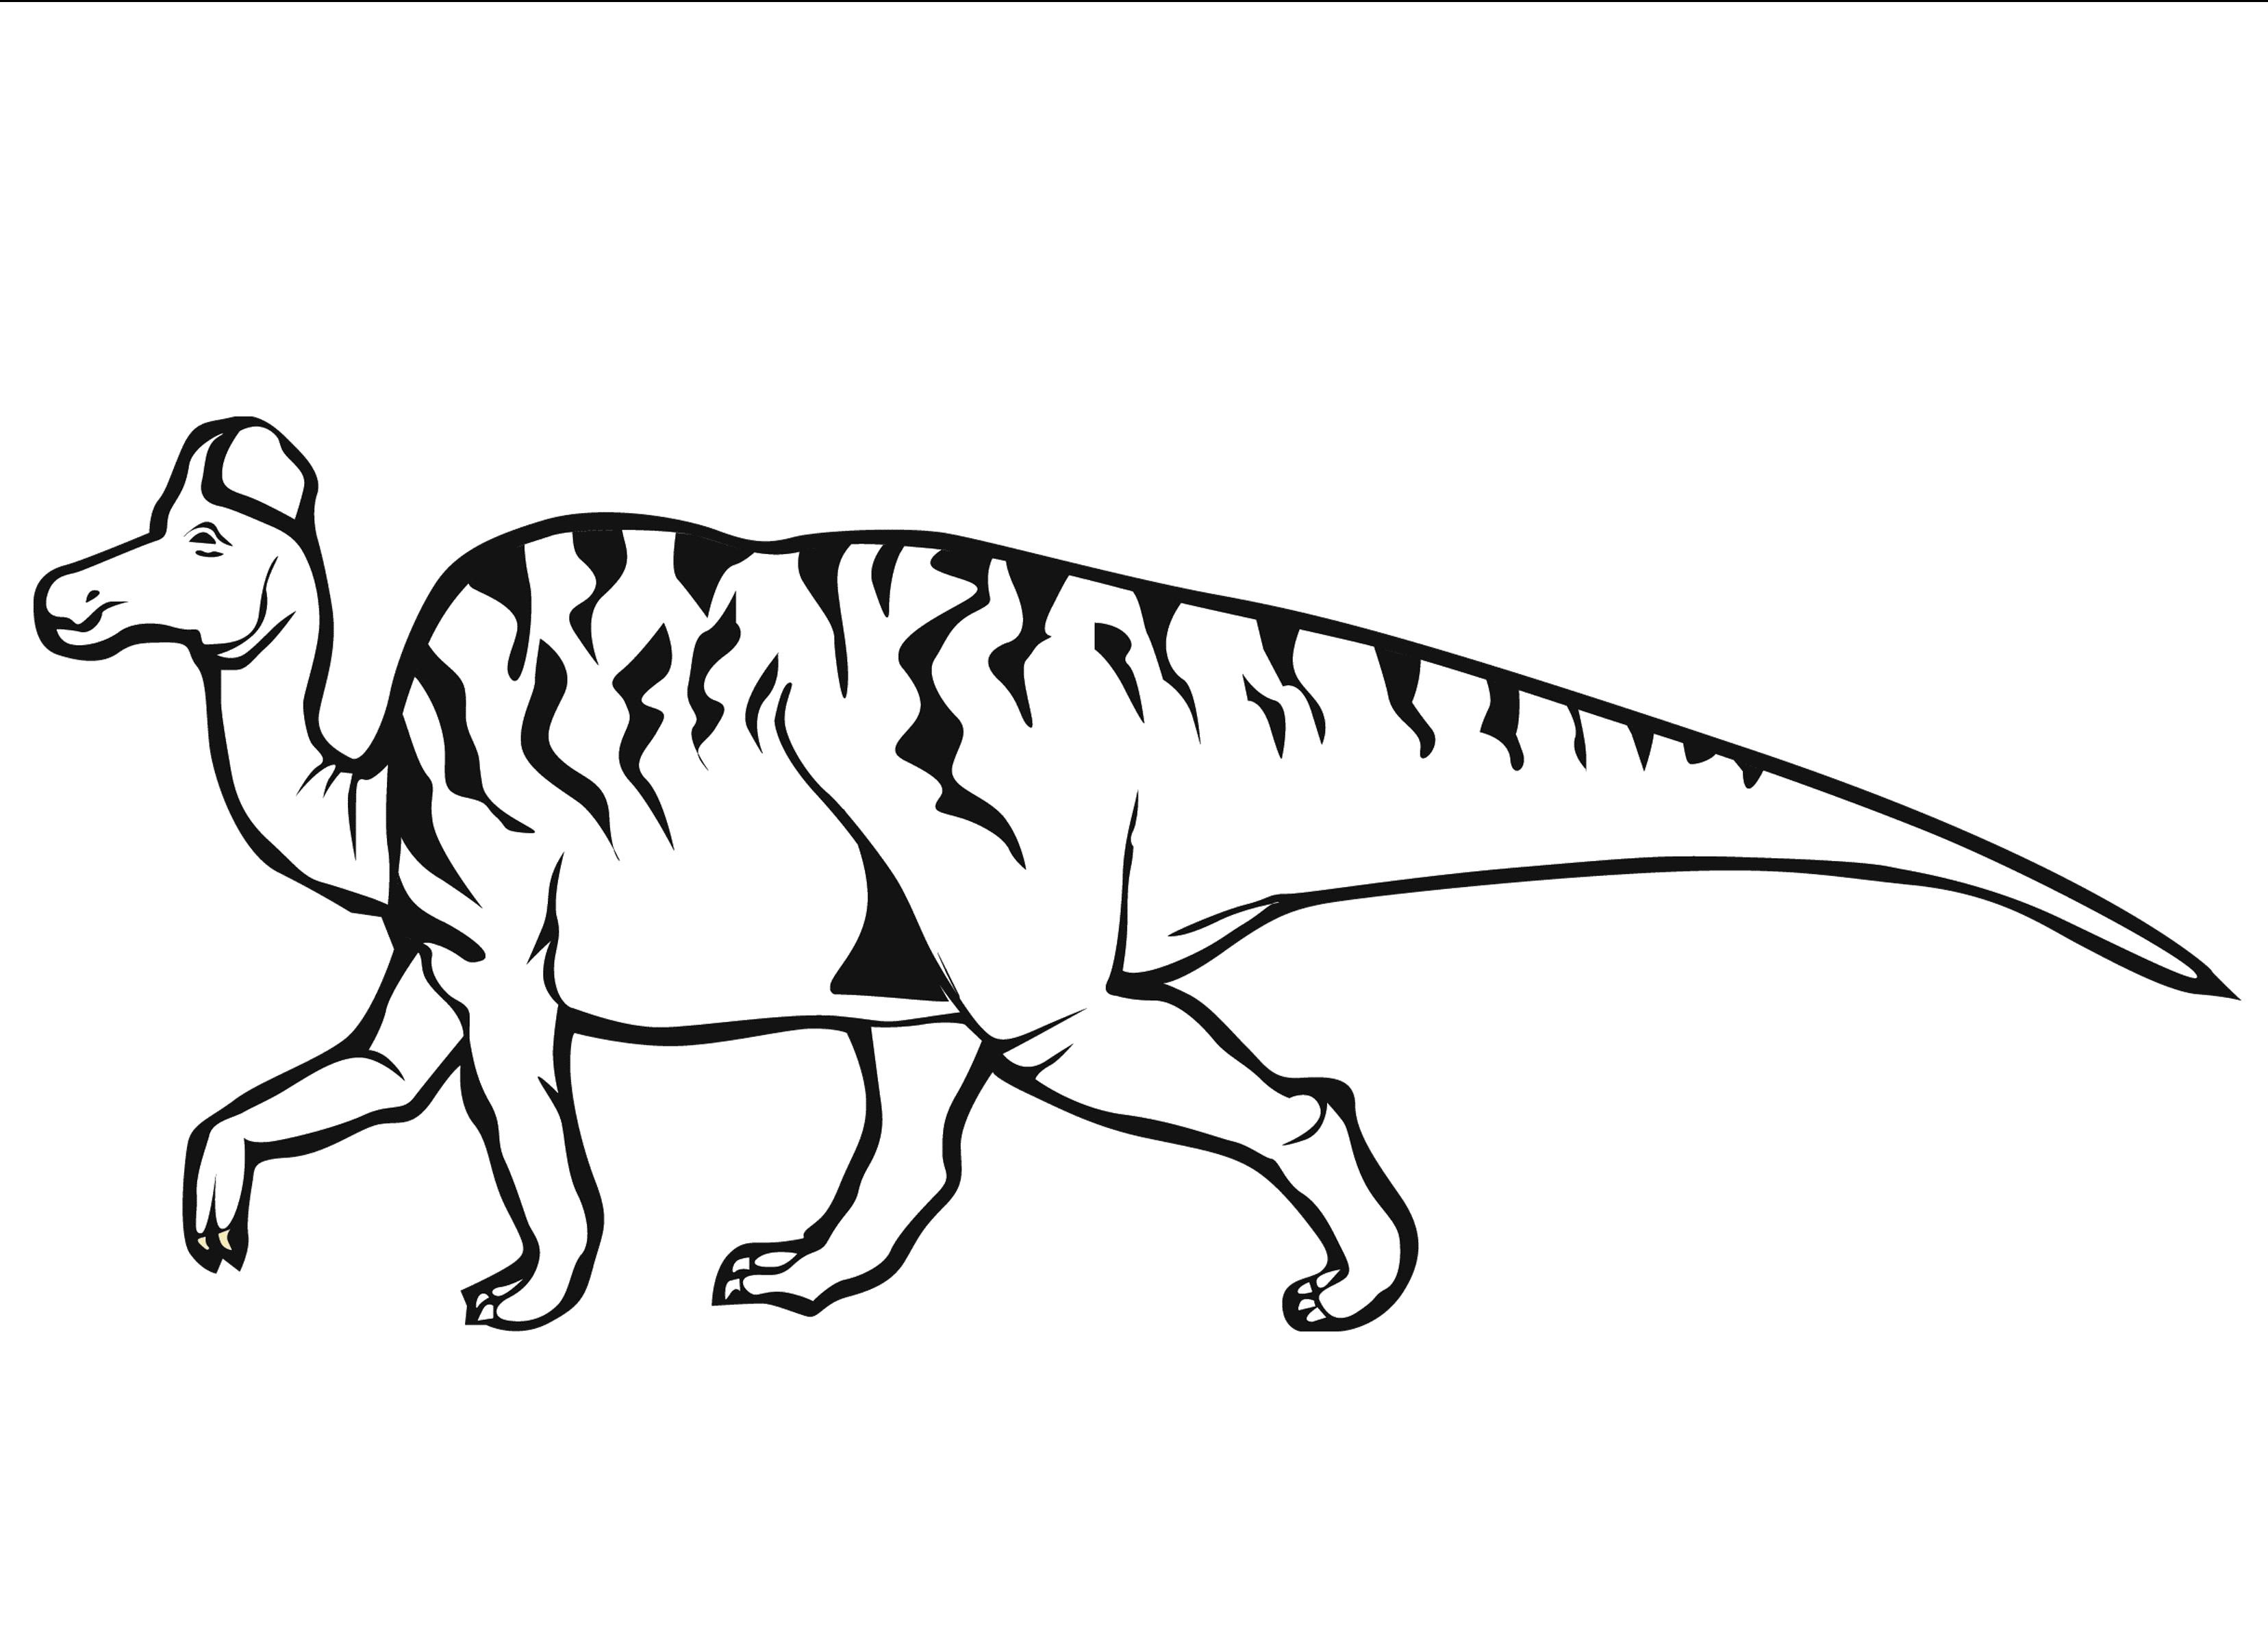 Раскраска  про динозавров. Скачать динозавр.  Распечатать динозавр